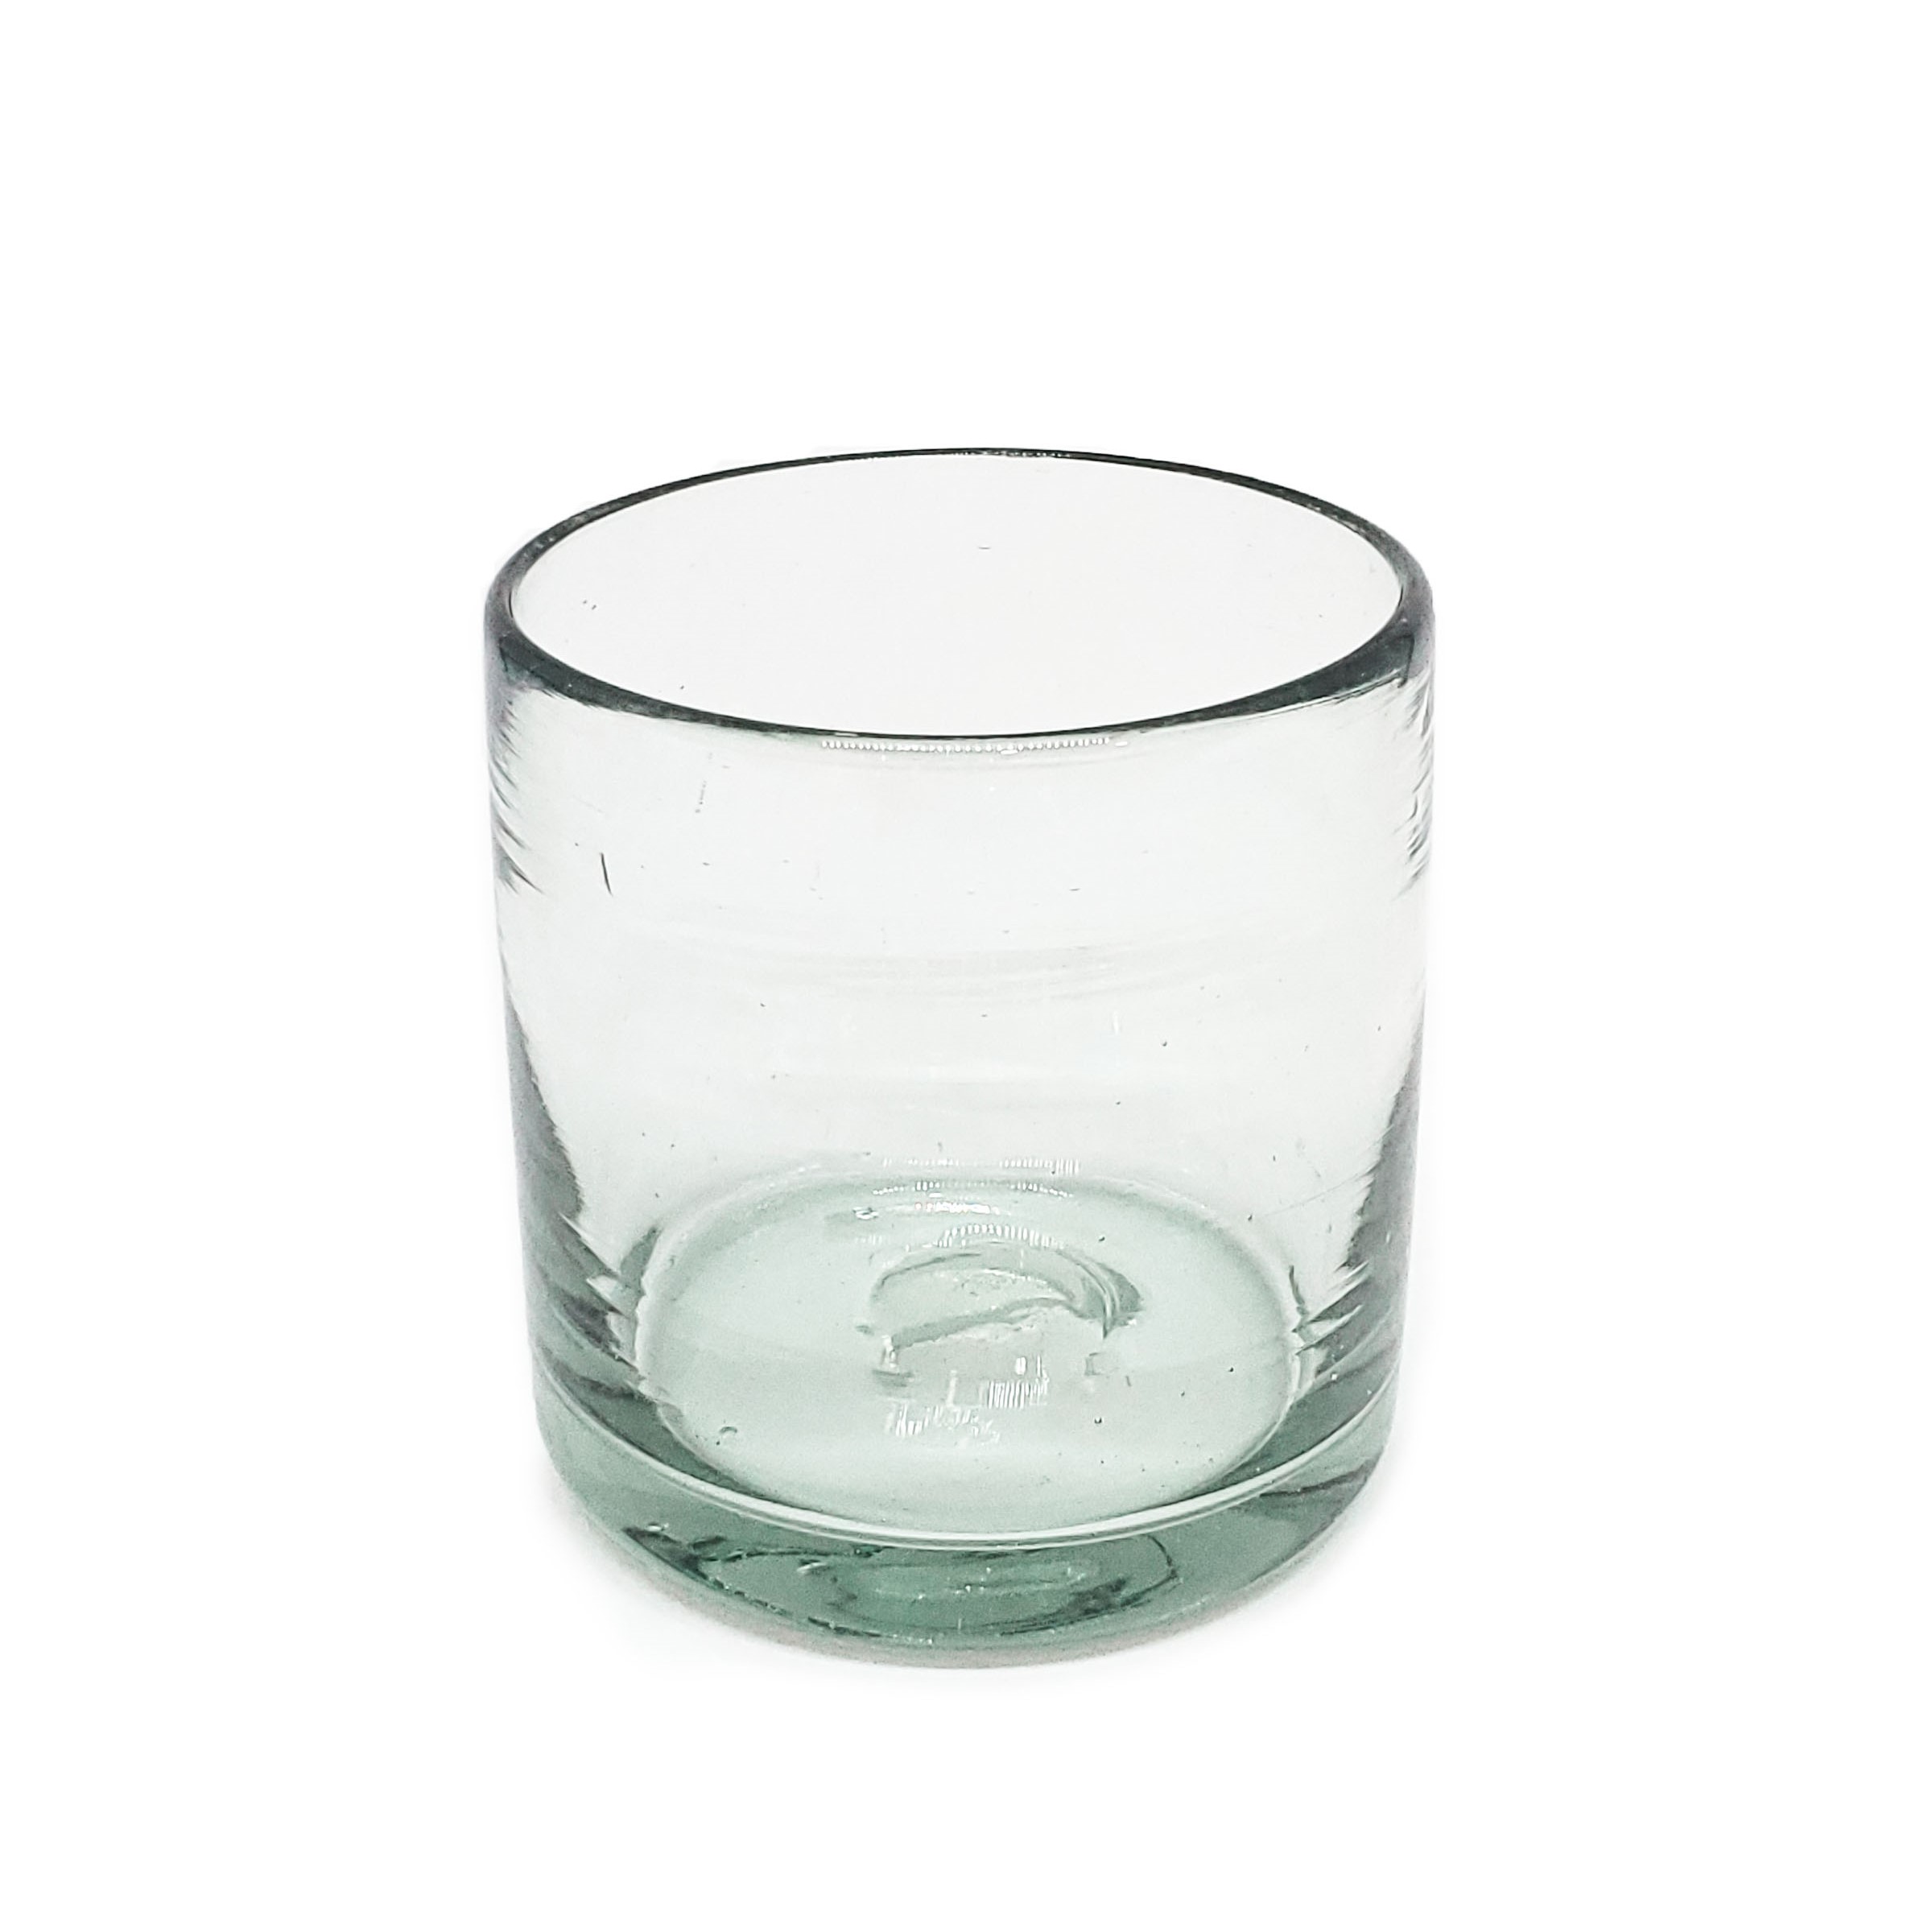 Color Transparente al Mayoreo / vasos DOF 8oz Transparentes / Éstos artesanales vasos le darán un toque clásico a su bebida favorita.